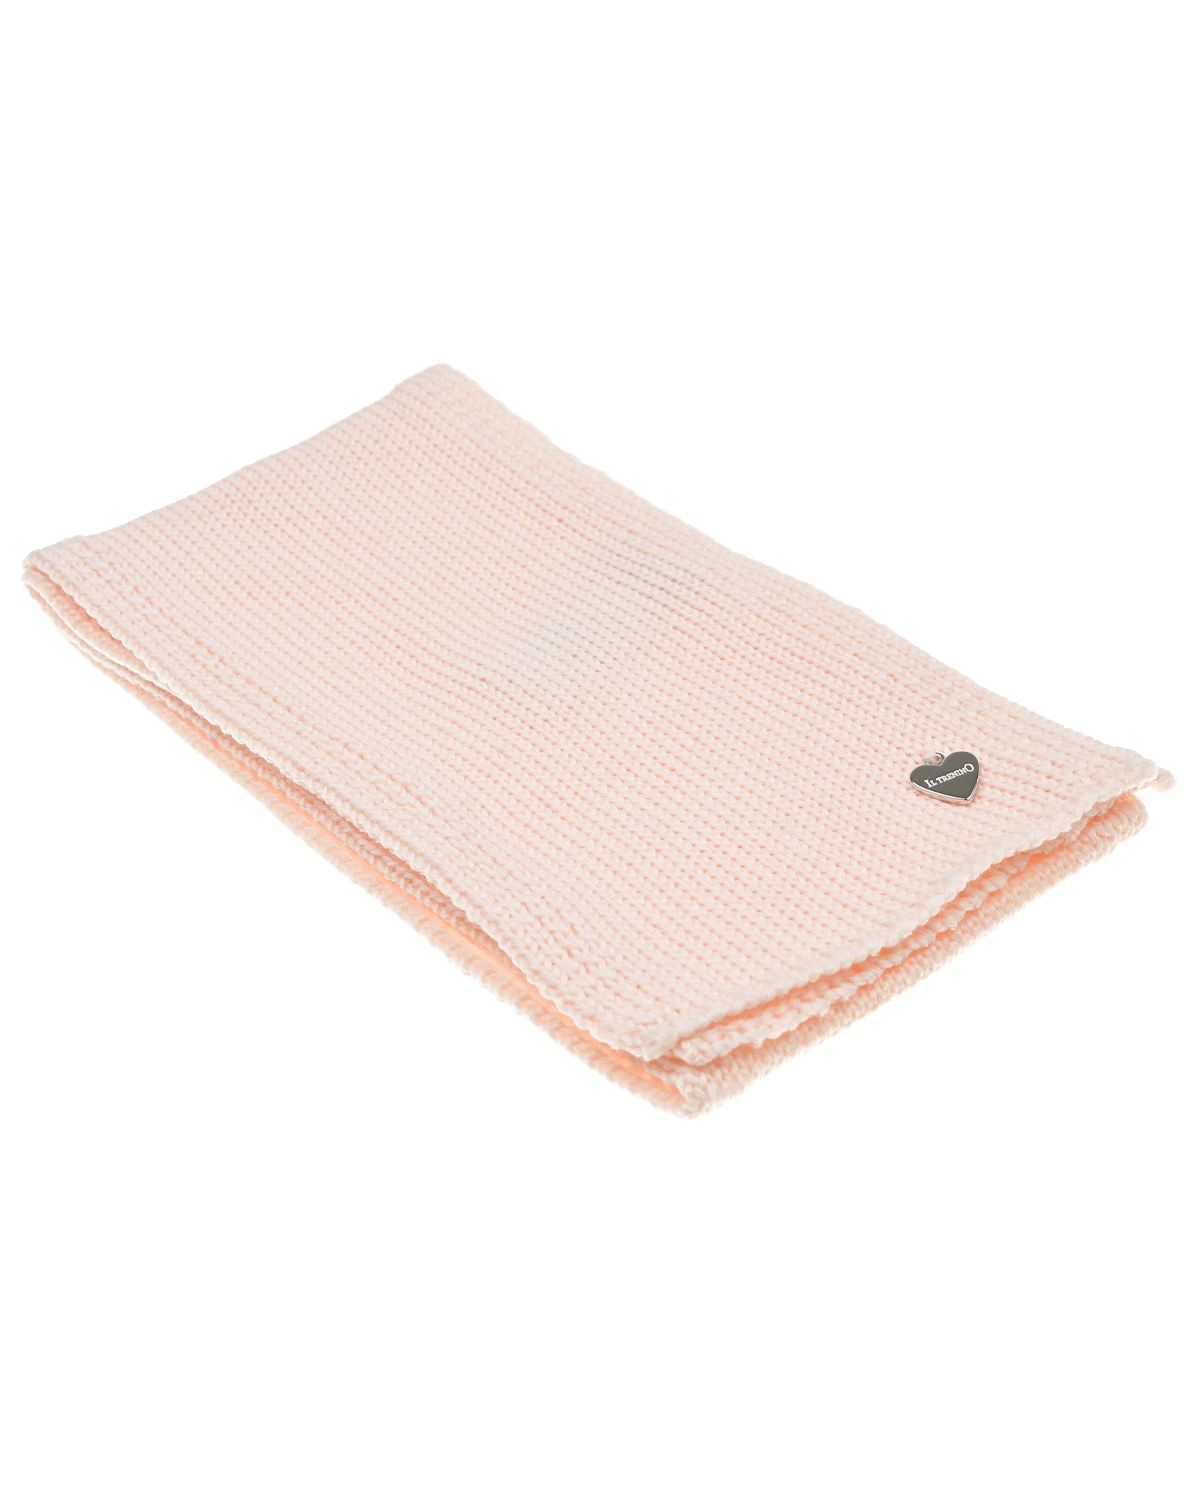 Розовый шарф, 95x13 см Il Trenino детский, размер unica